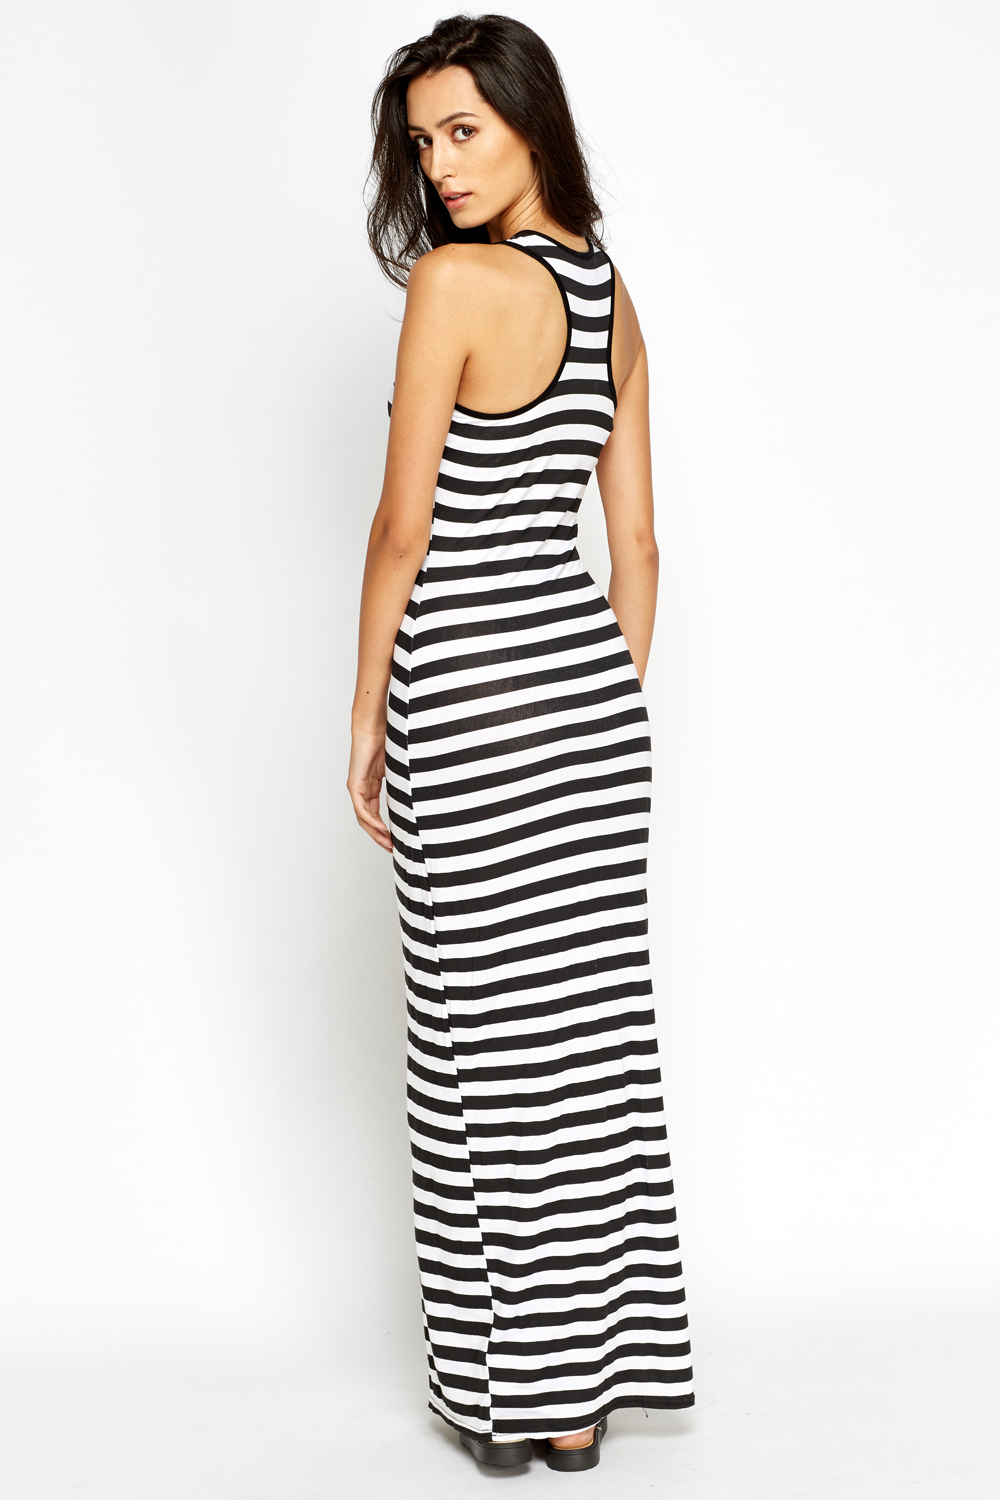 Striped Maxi Dress - Just $7